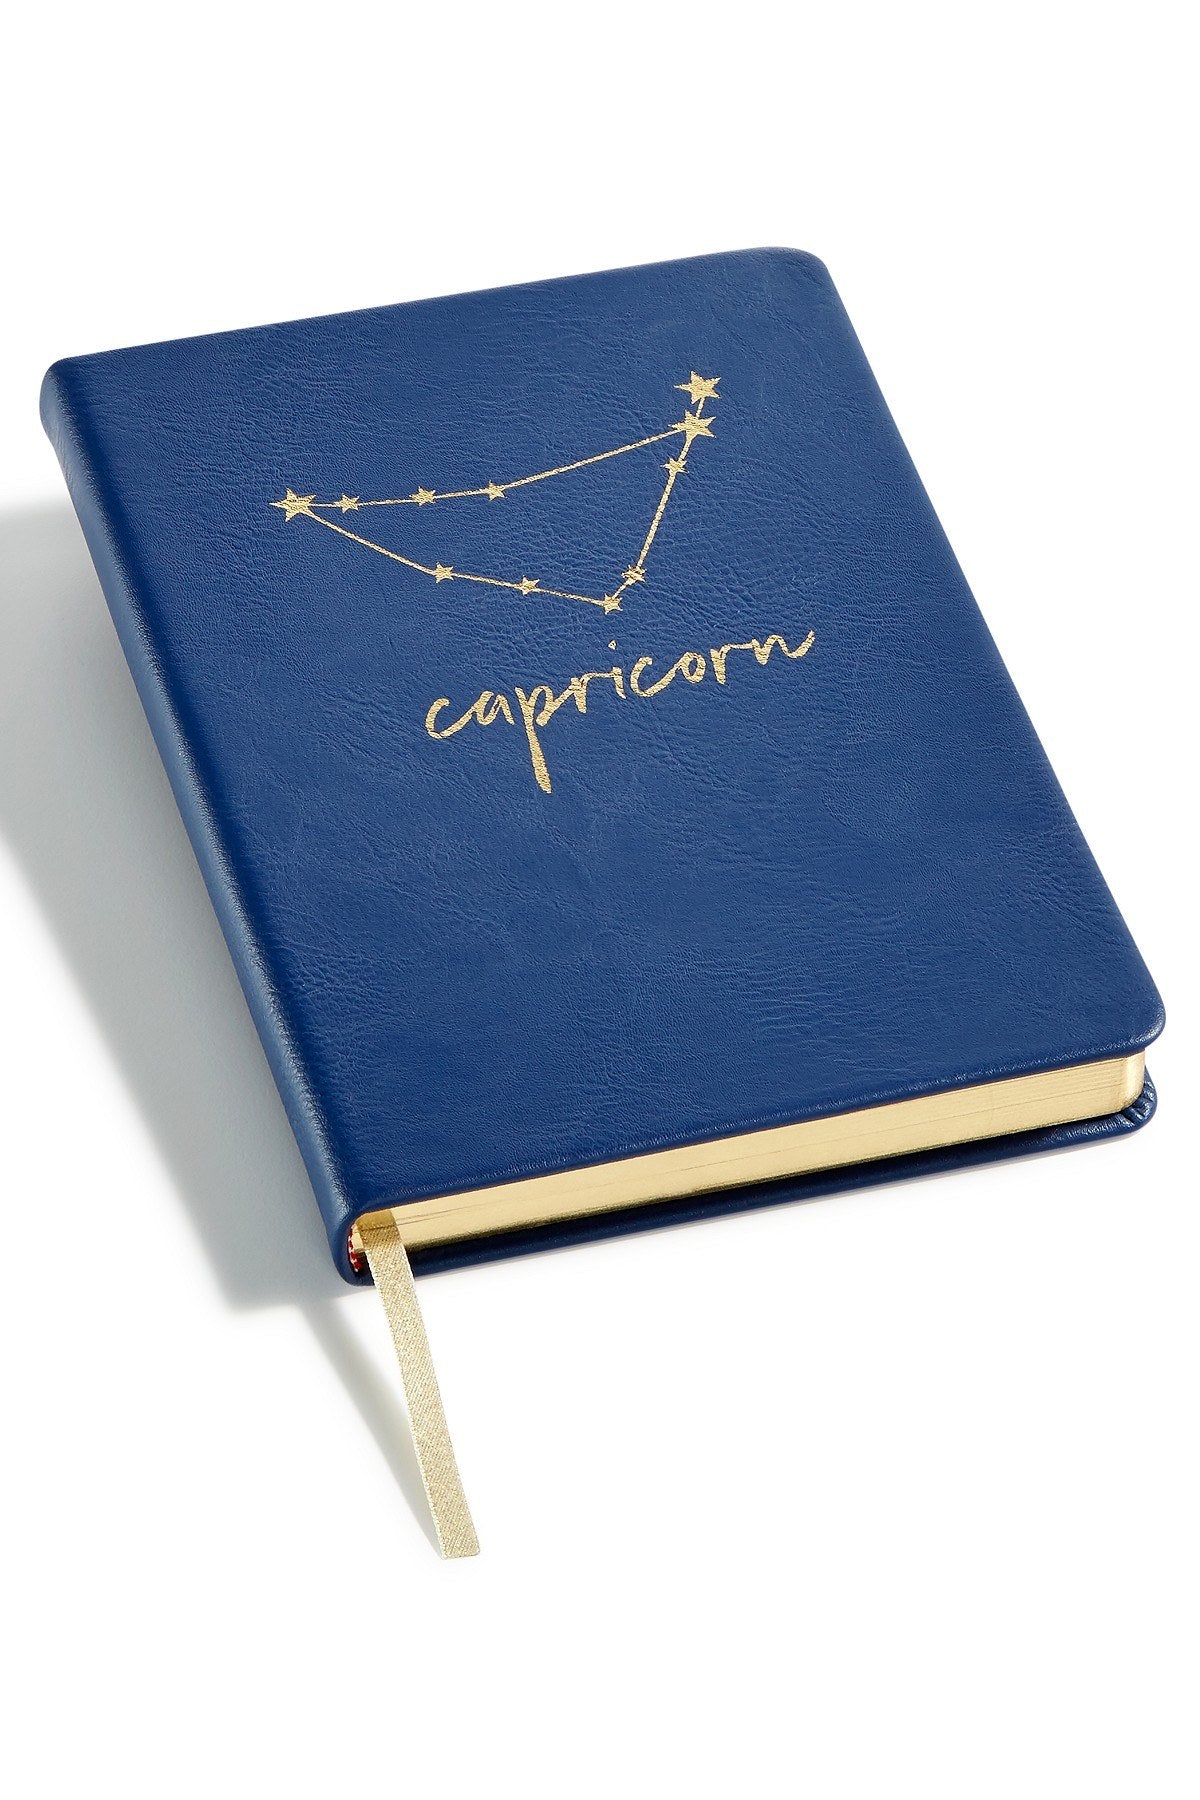 Celebrate Shop Navy CAPRICORN Zodiac Faux-Leather Notebook